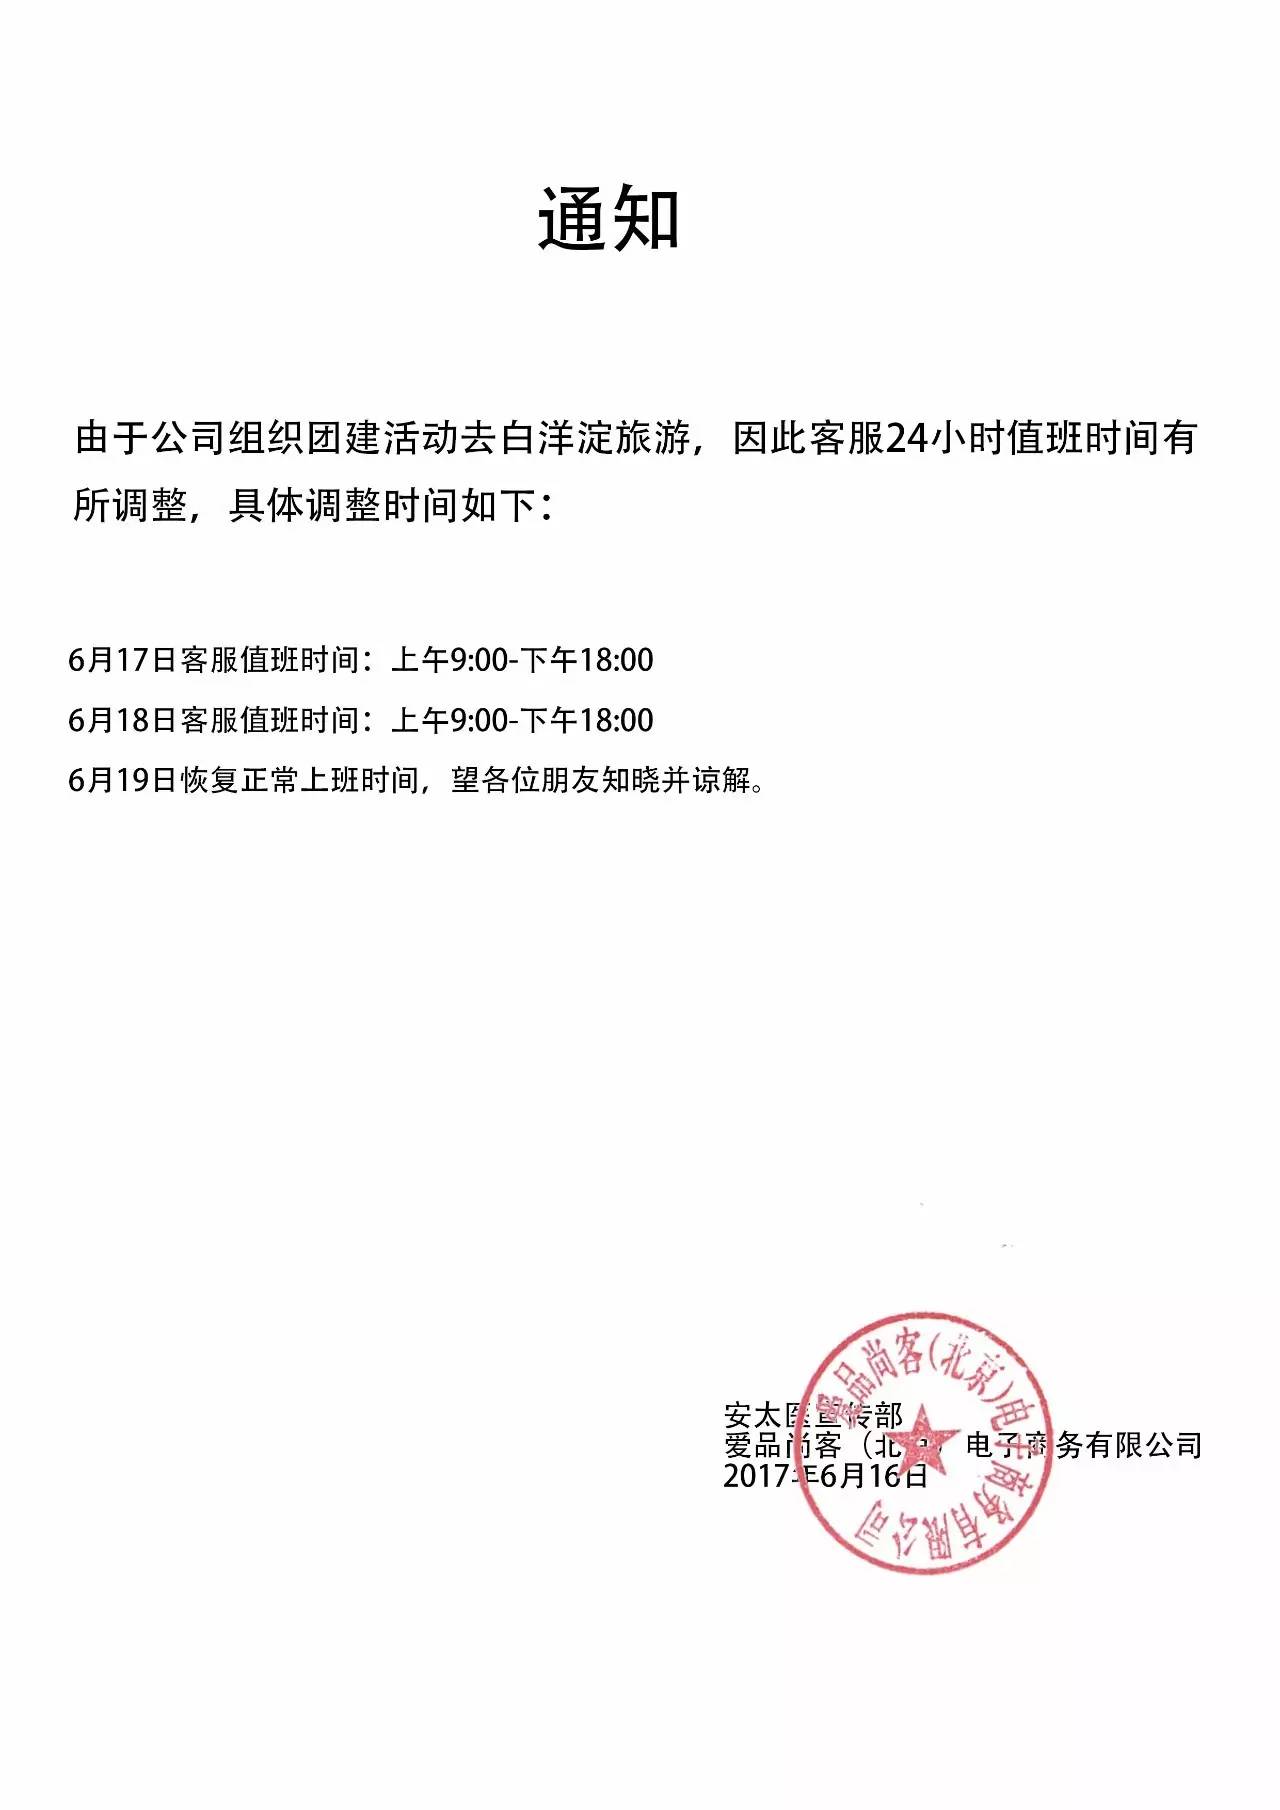 告知函：销售部业务员，王超群离职通知-上海郁发实业有限公司